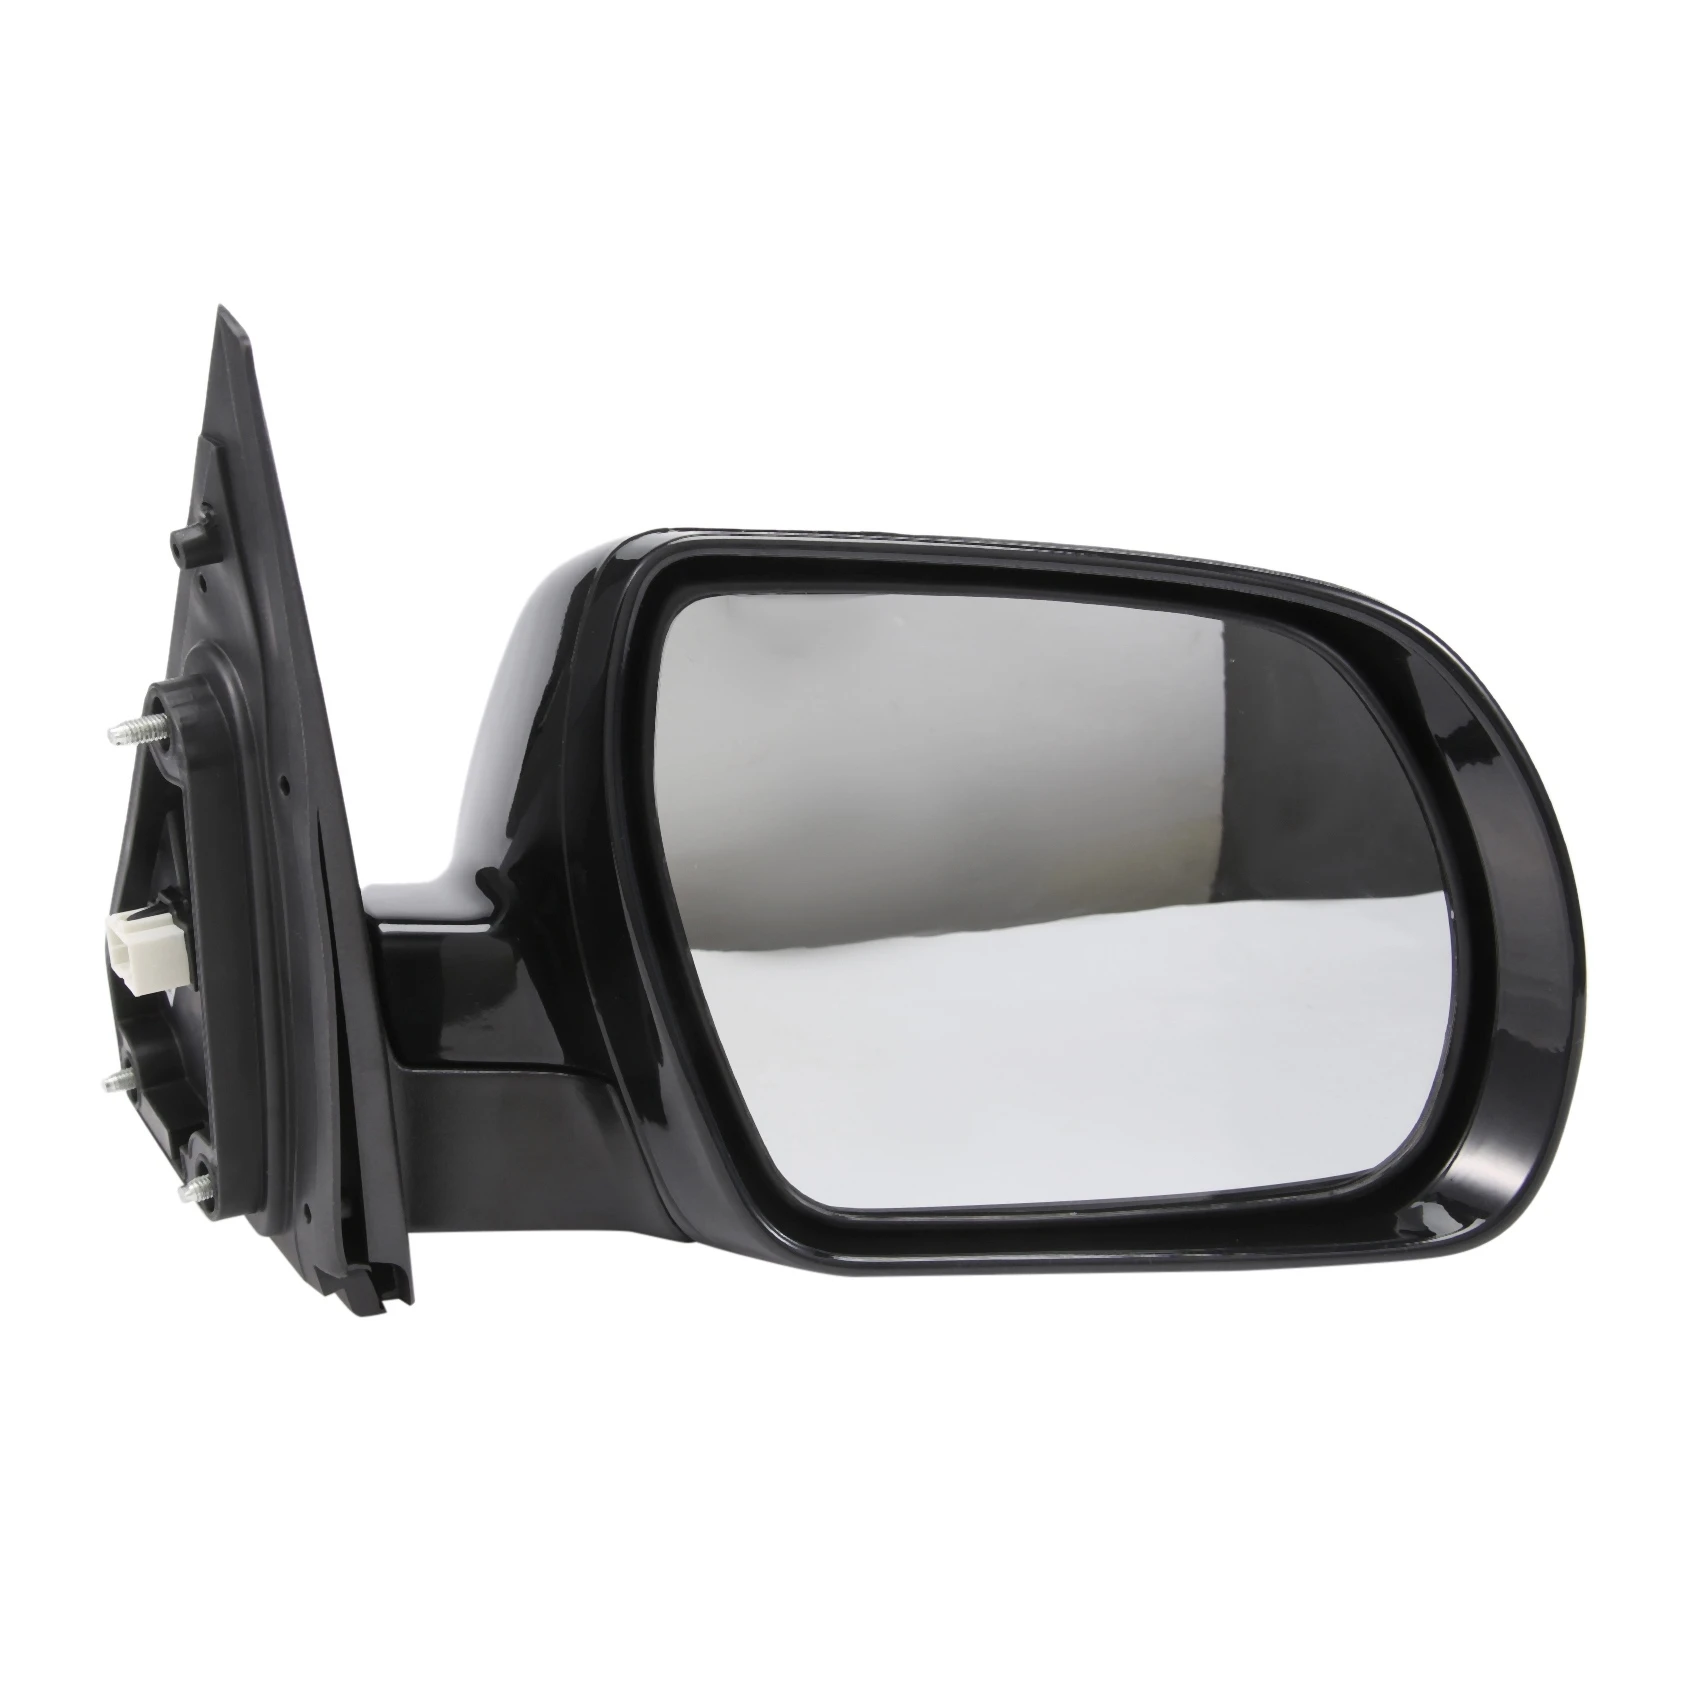 

Автомобильное боковое зеркало заднего вида в сборе 876202B510 для Hyundai Santa Fe 2007-2012, боковое зеркало заднего вида